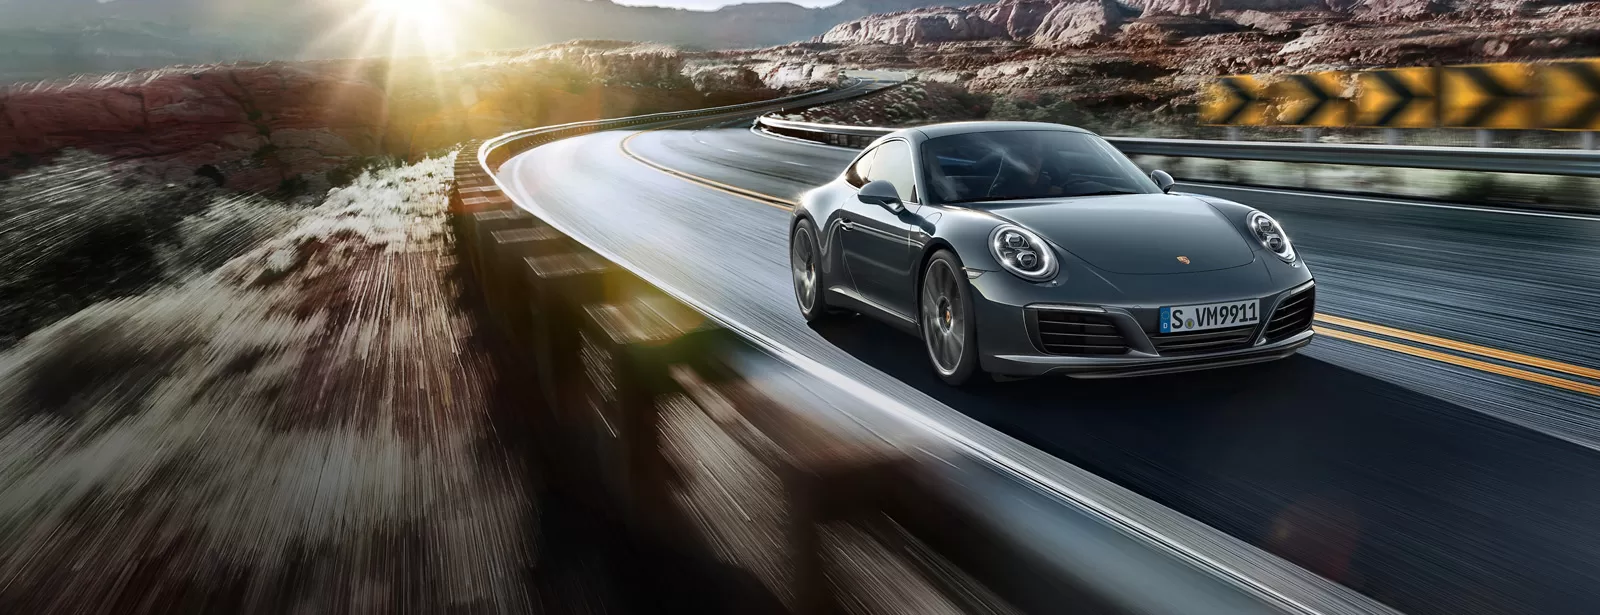 Более мощный и экономичный: новый Porsche 911 Carrera дарит еще больше удовольствия от вождения